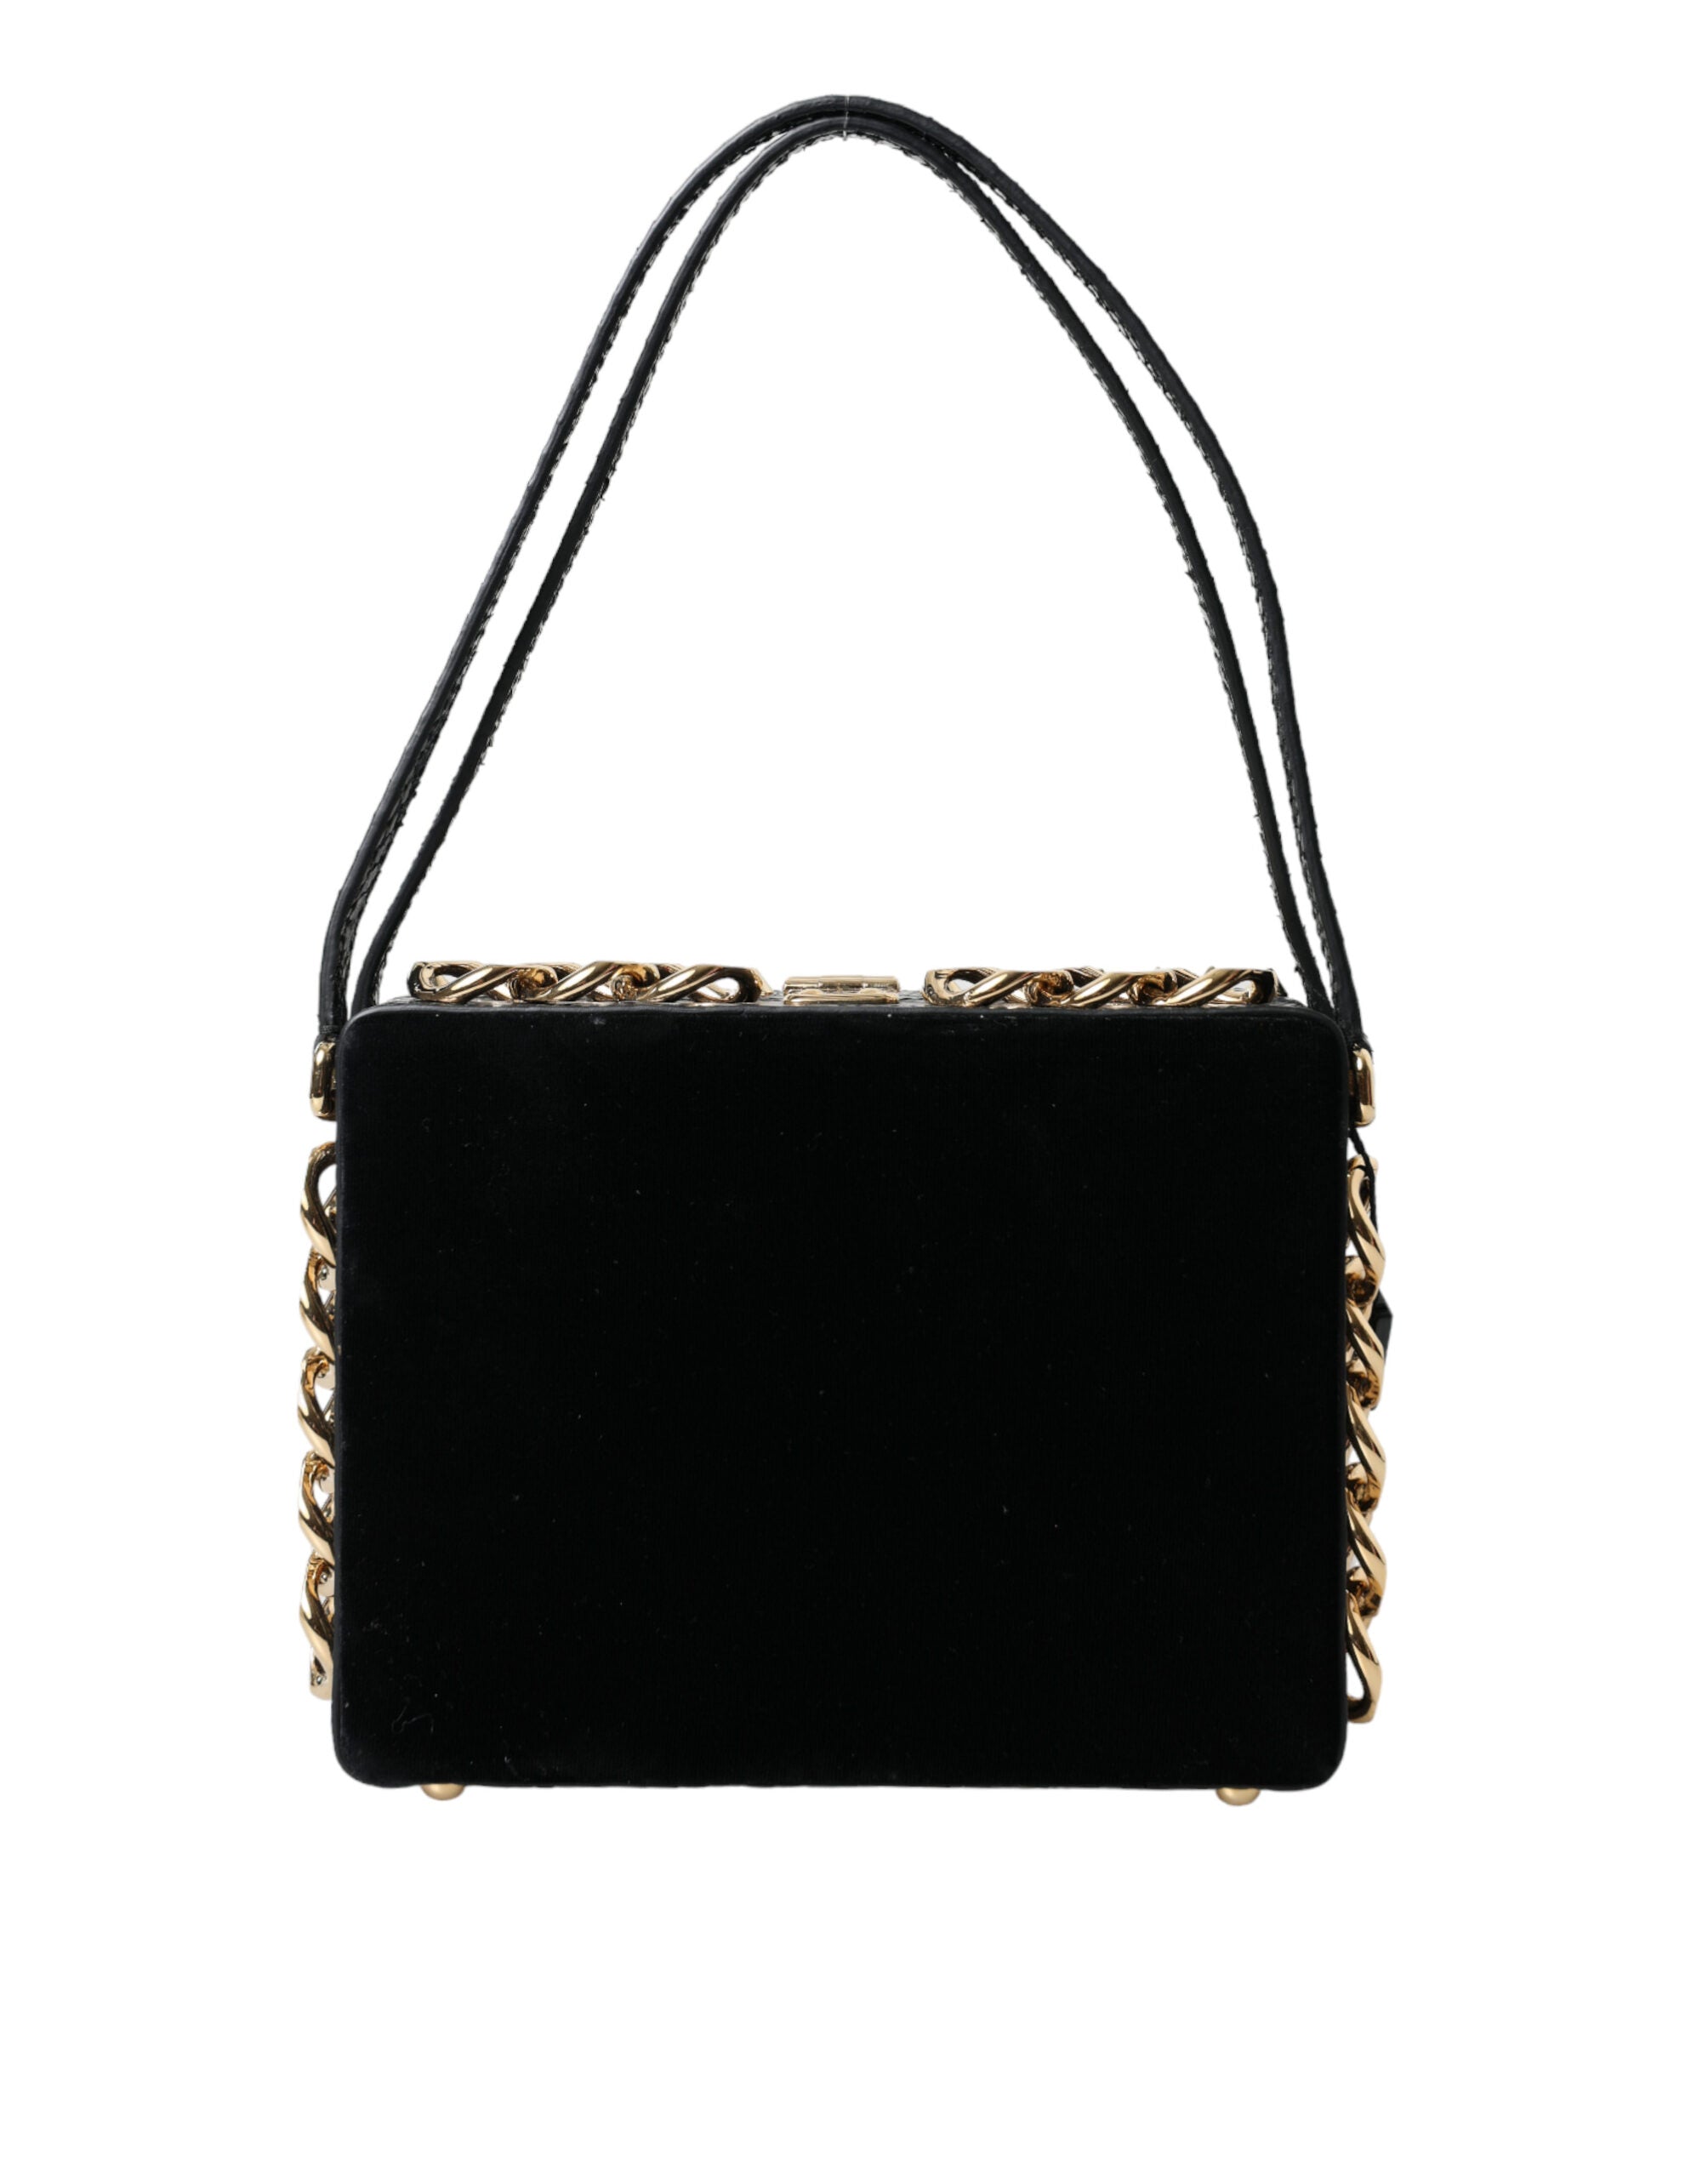 Dolce & Gabbana Black Floral Padlock Leather Crystal Velvet Clutch BOX Bag